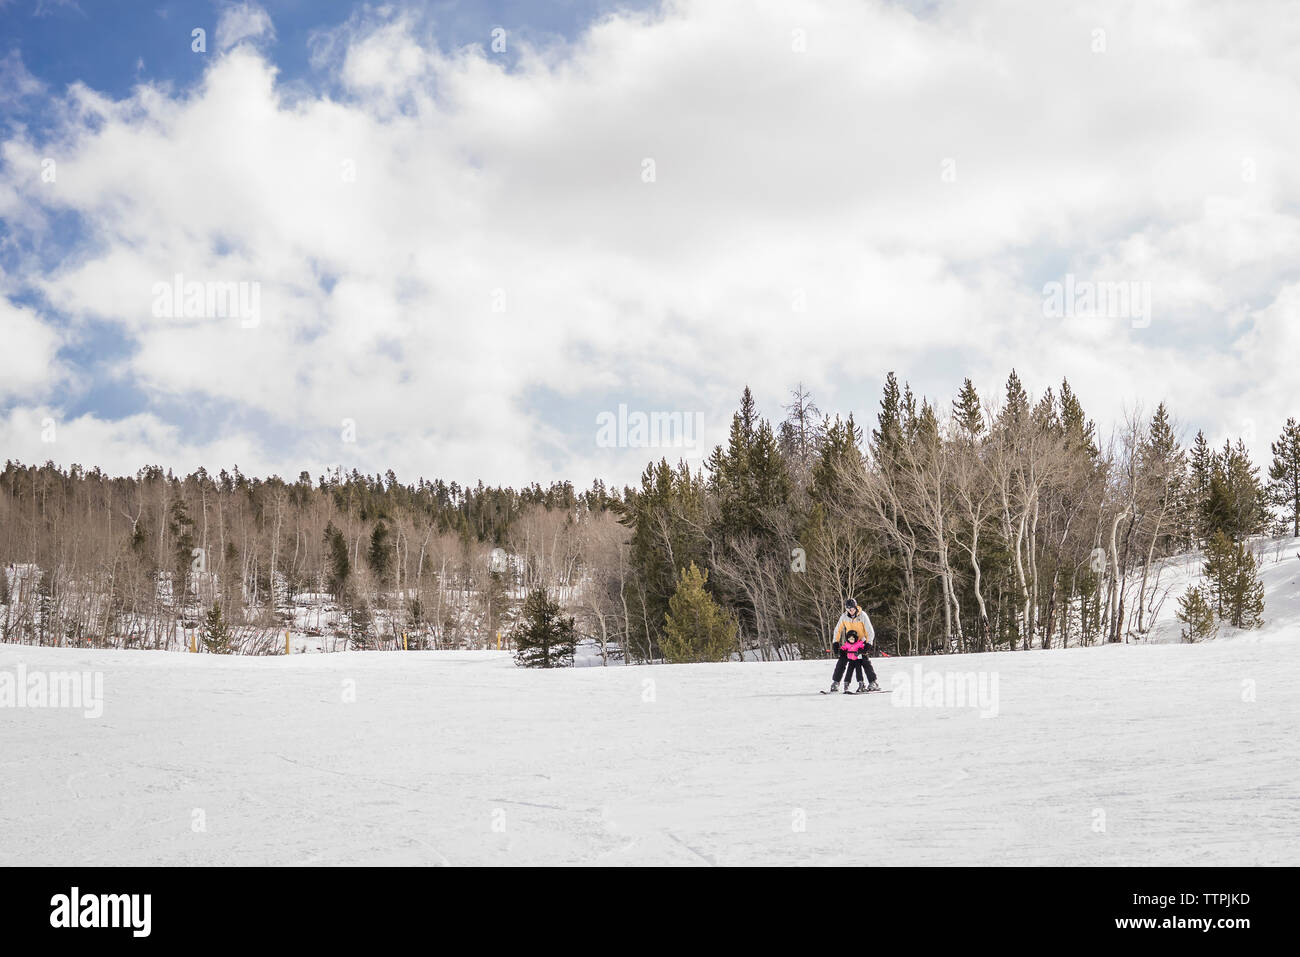 Padre con hija esquiando en paisaje cubierto de nieve contra el cielo nublado en el bosque Foto de stock